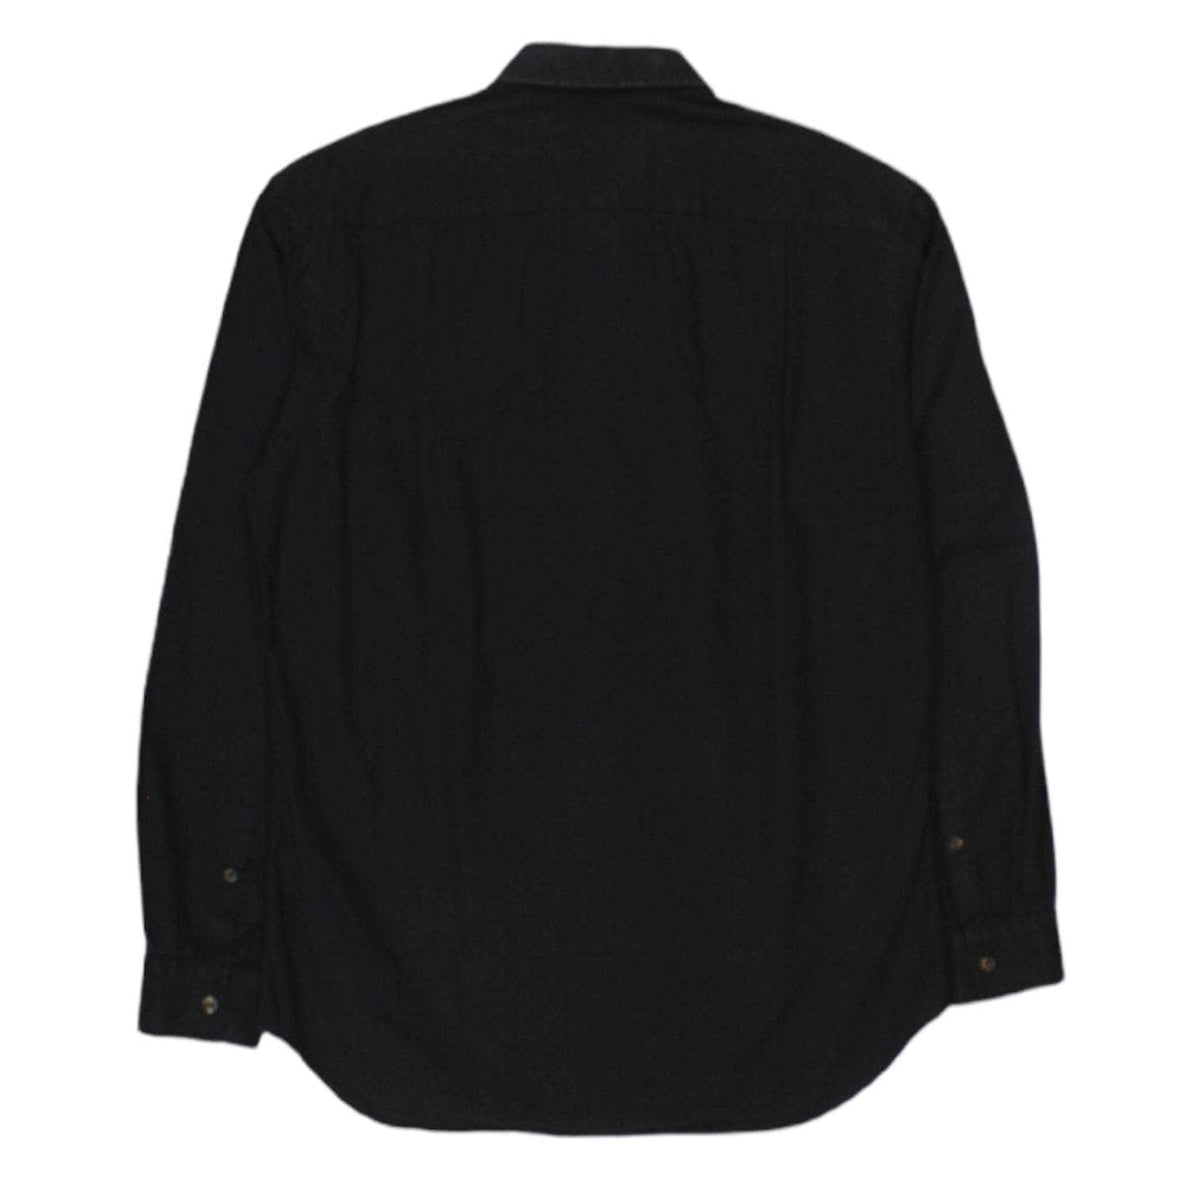 Vivienne Westwood Black Cotton Shirt